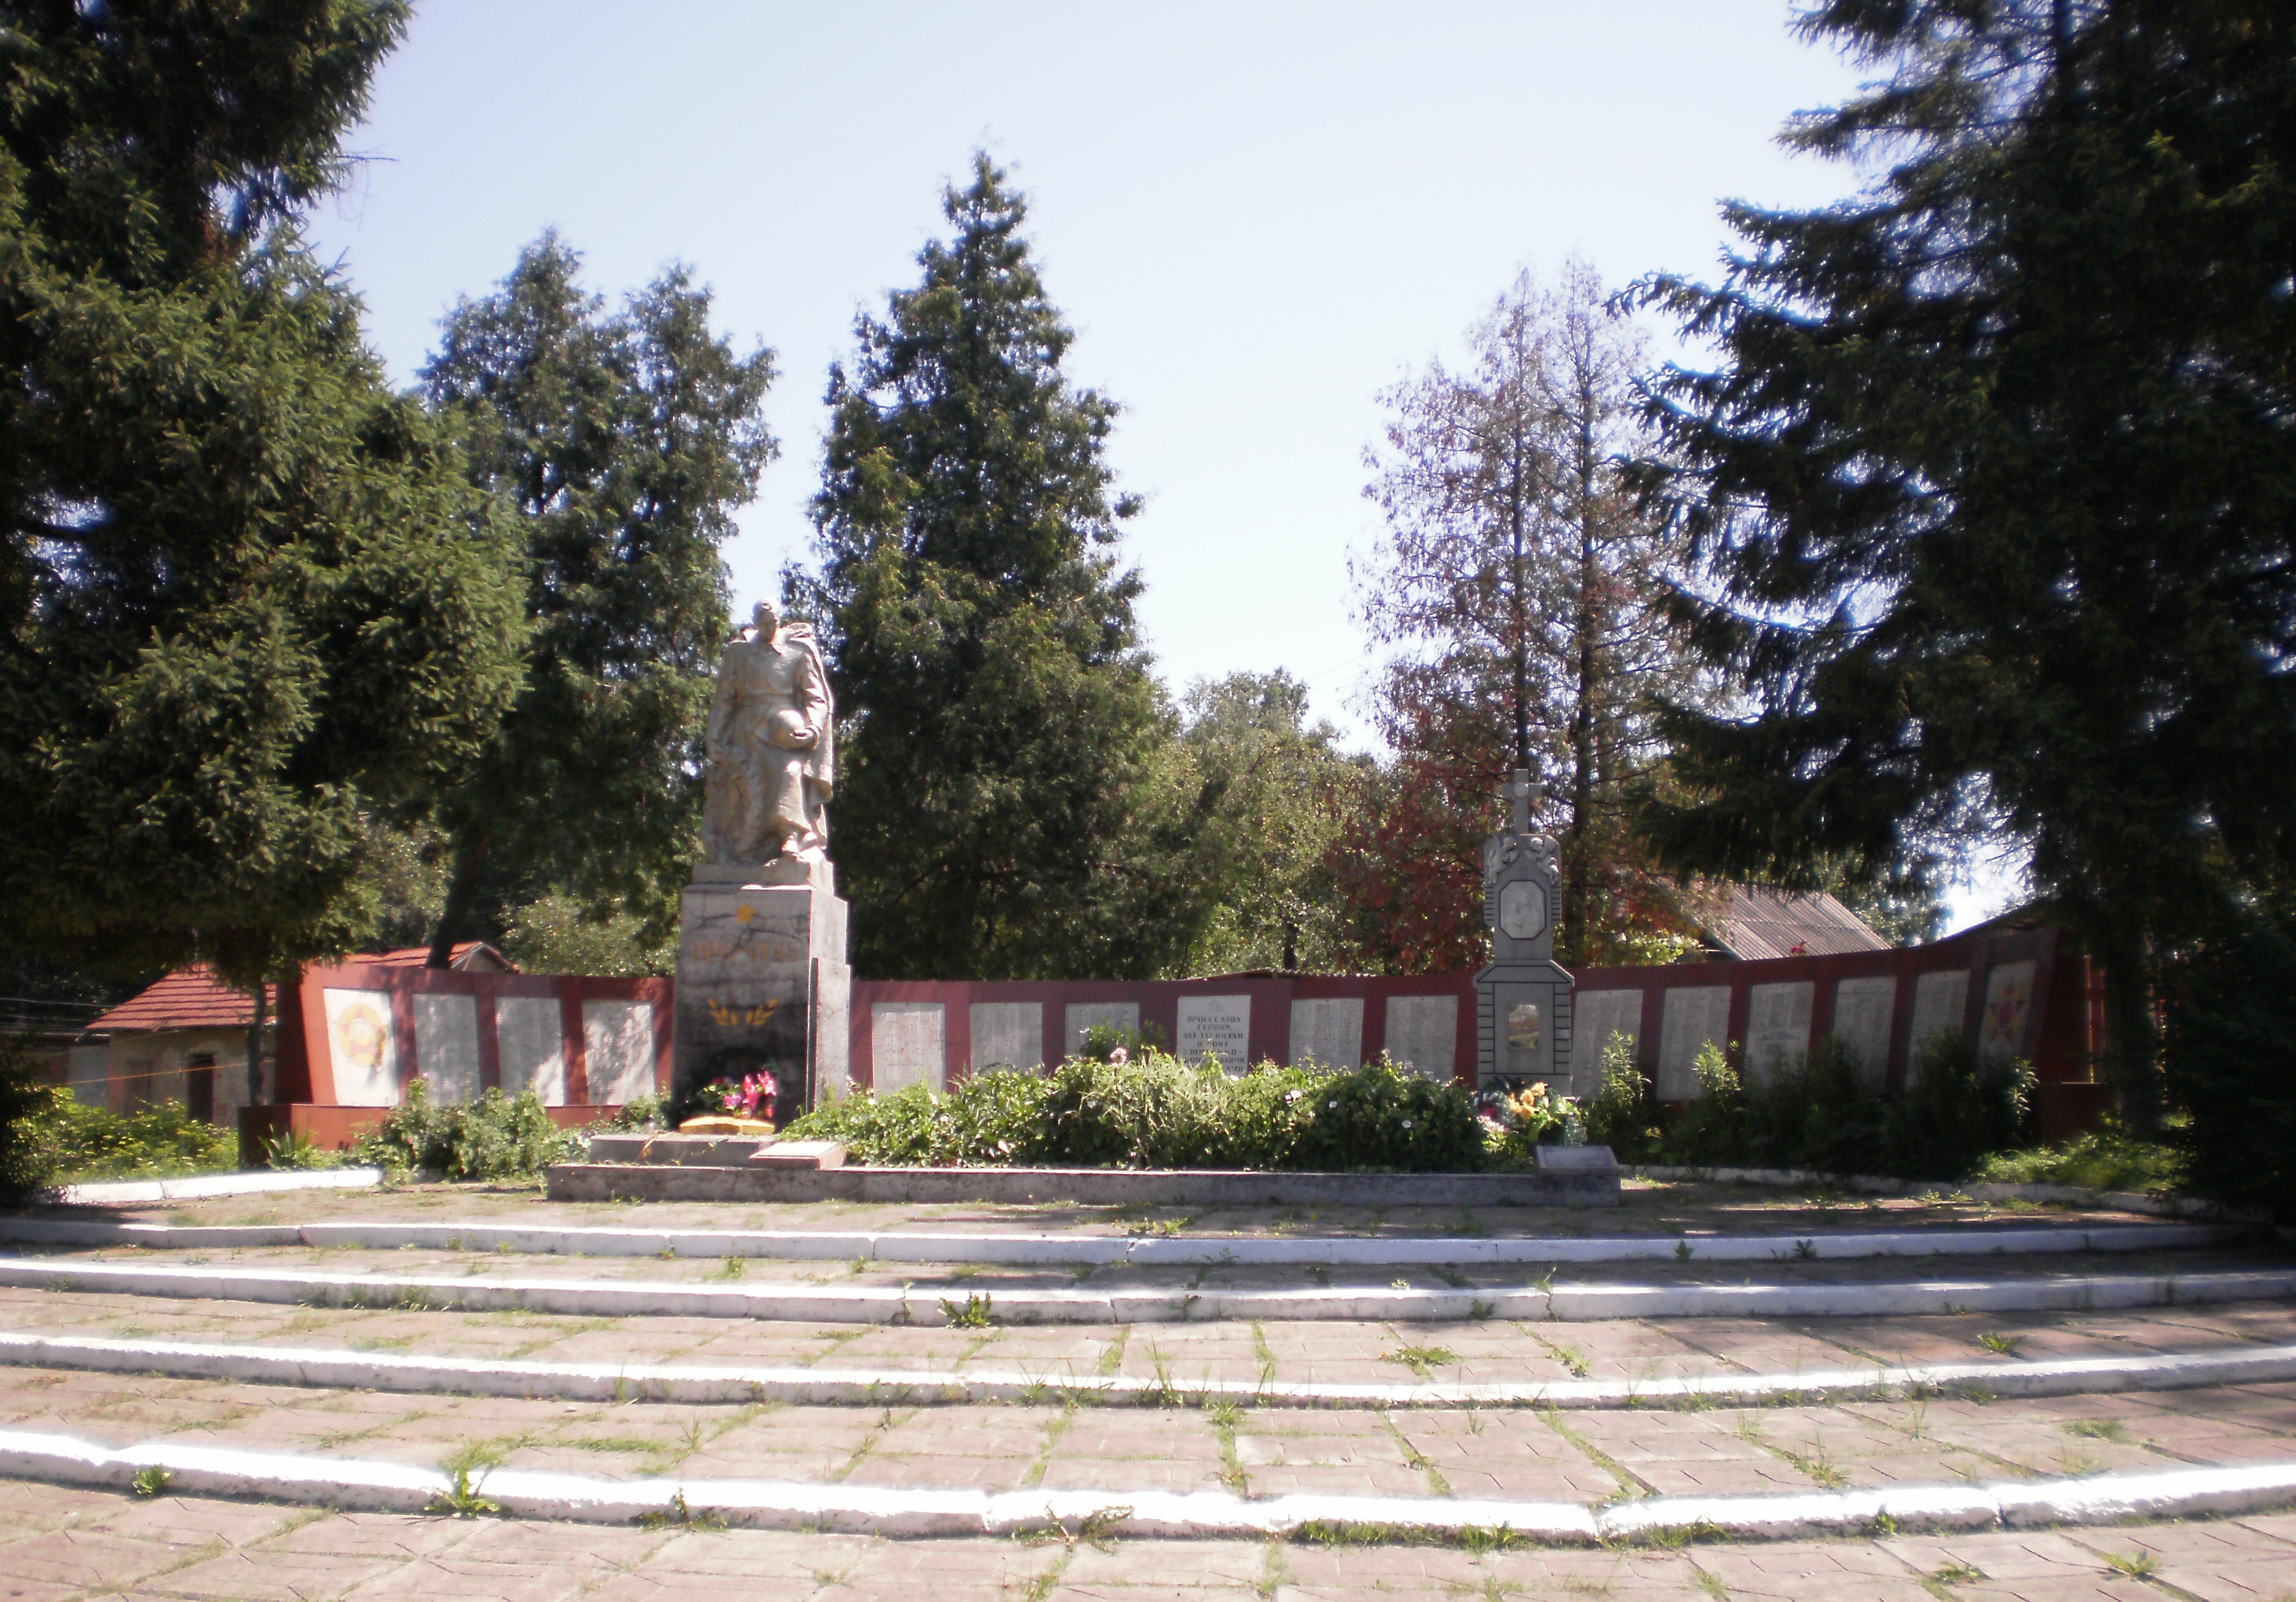 Братская могила в с. Коршев Коломыйского района